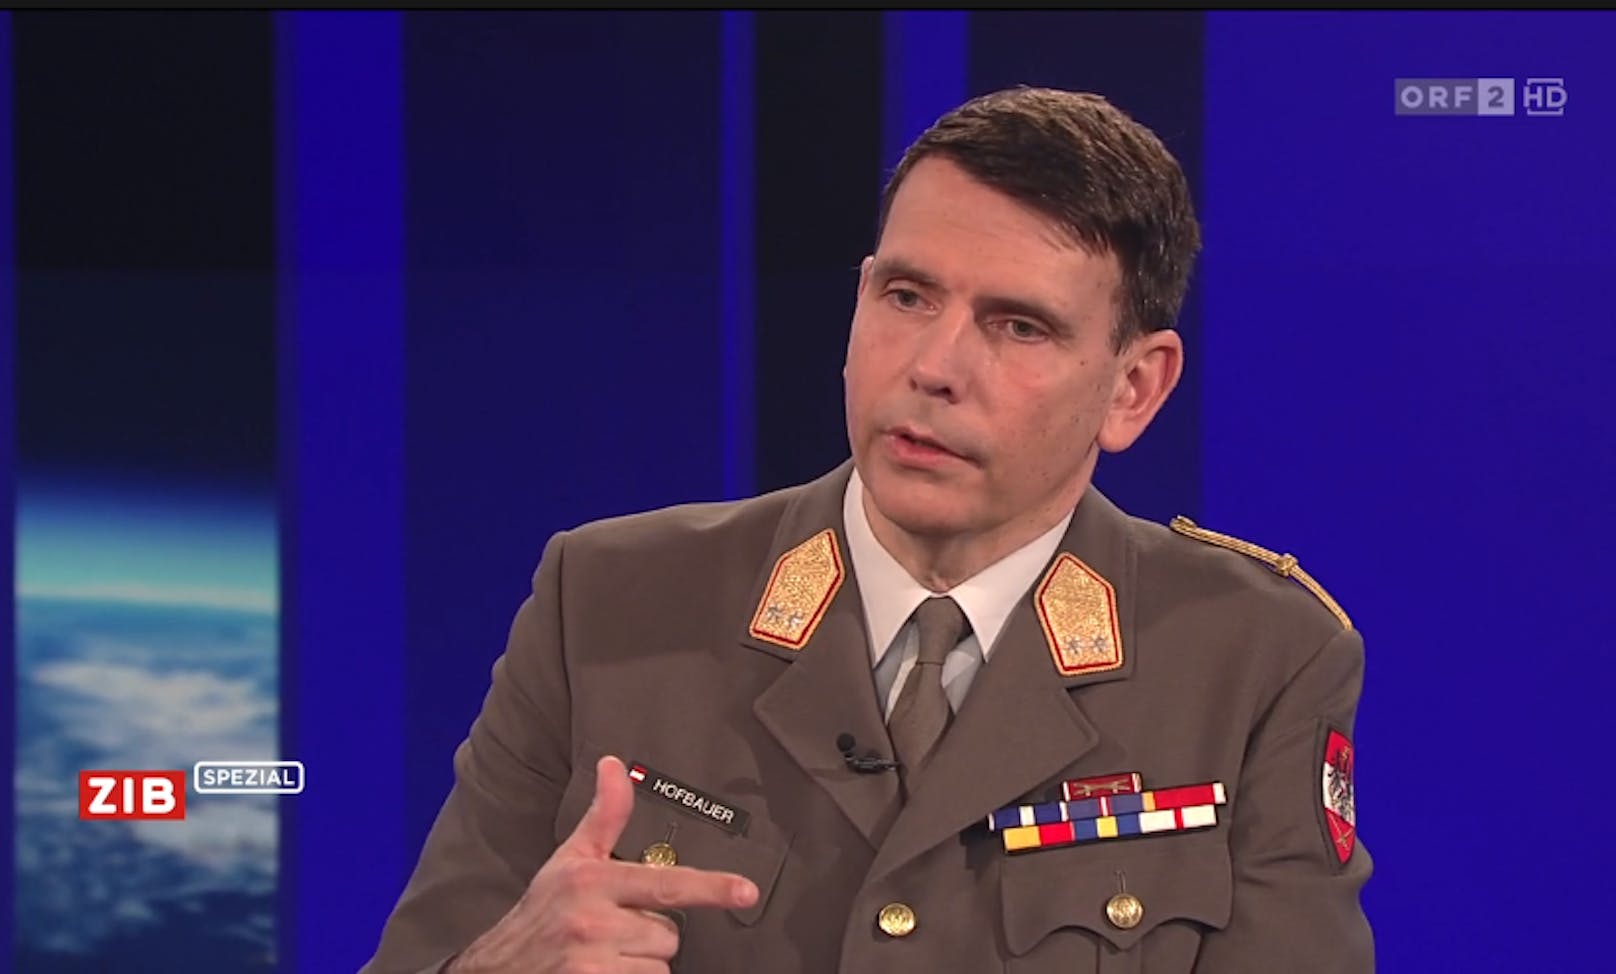 Militärexperte Günter Hofbauer sprach am Donnerstag von einem "neuen kalten Krieg" in der Sondersendung des ORF zur Lage in der Ukraine.